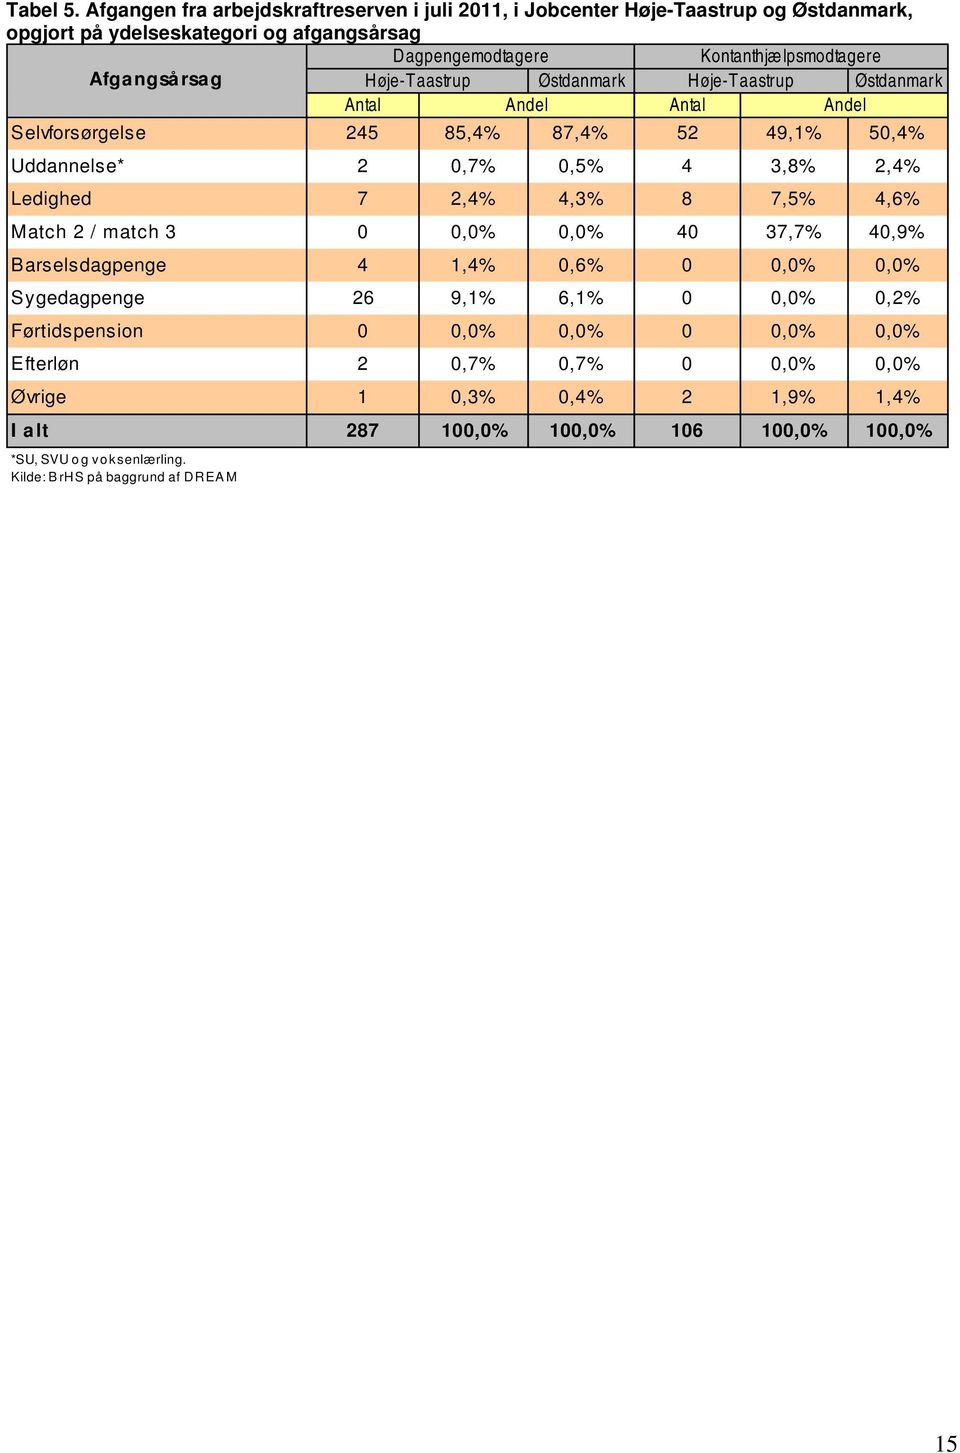 Afgangsårsag Høje-Taastrup Østdanmark Høje-Taastrup Østdanmark Antal Andel Antal Andel Selvforsørgelse 245 85,4% 87,4% 52 49,1% 50,4% Uddannelse* 2 0,7% 0,5% 4 3,8% 2,4% Ledighed